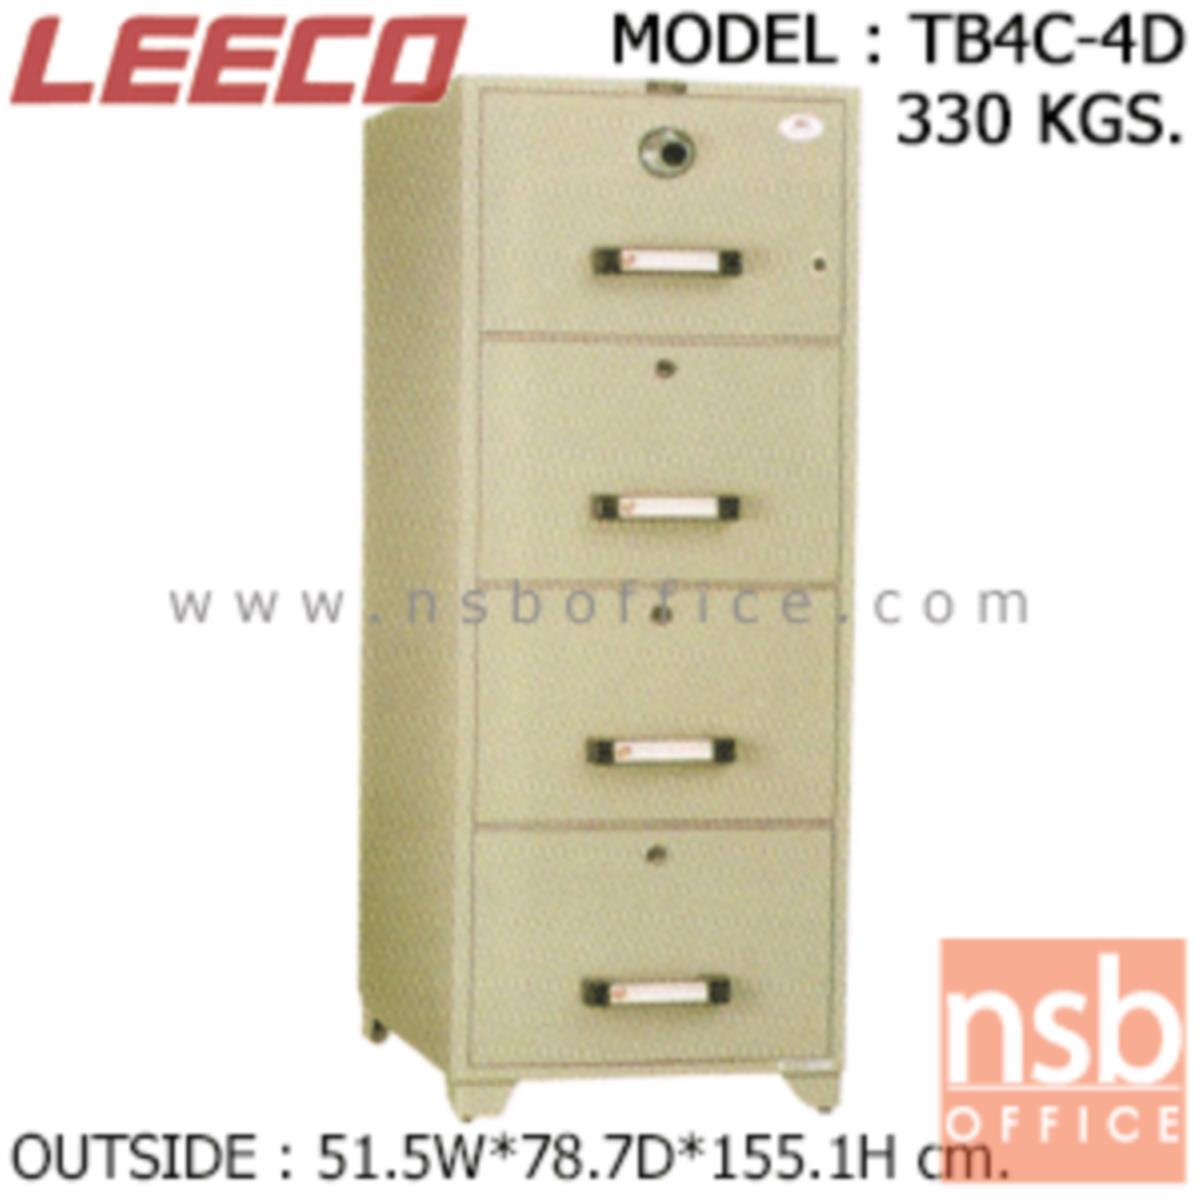 ตู้เซฟ 4 ลิ้นชักแฟ้มแขวน 330 กก. ลีโก้ รุ่น LEECO-TB4C-4D มี 4 กุญแจ 1 รหัส (เปลี่ยนรหัสไม่ได้)   